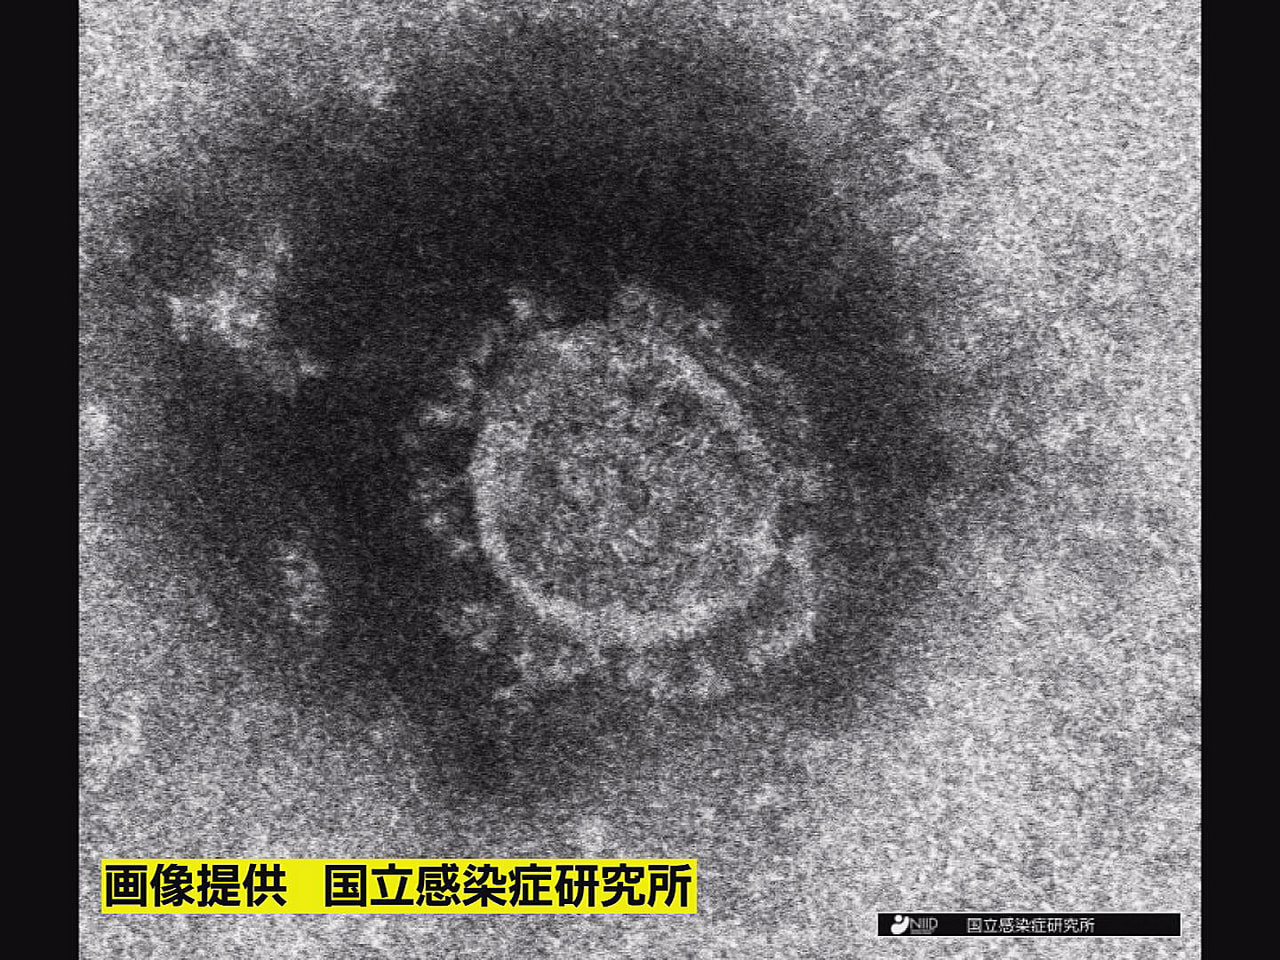 岐阜県は２２日、新型コロナウイルスの新規感染者が３１３人、また１人の死亡が確認さ...